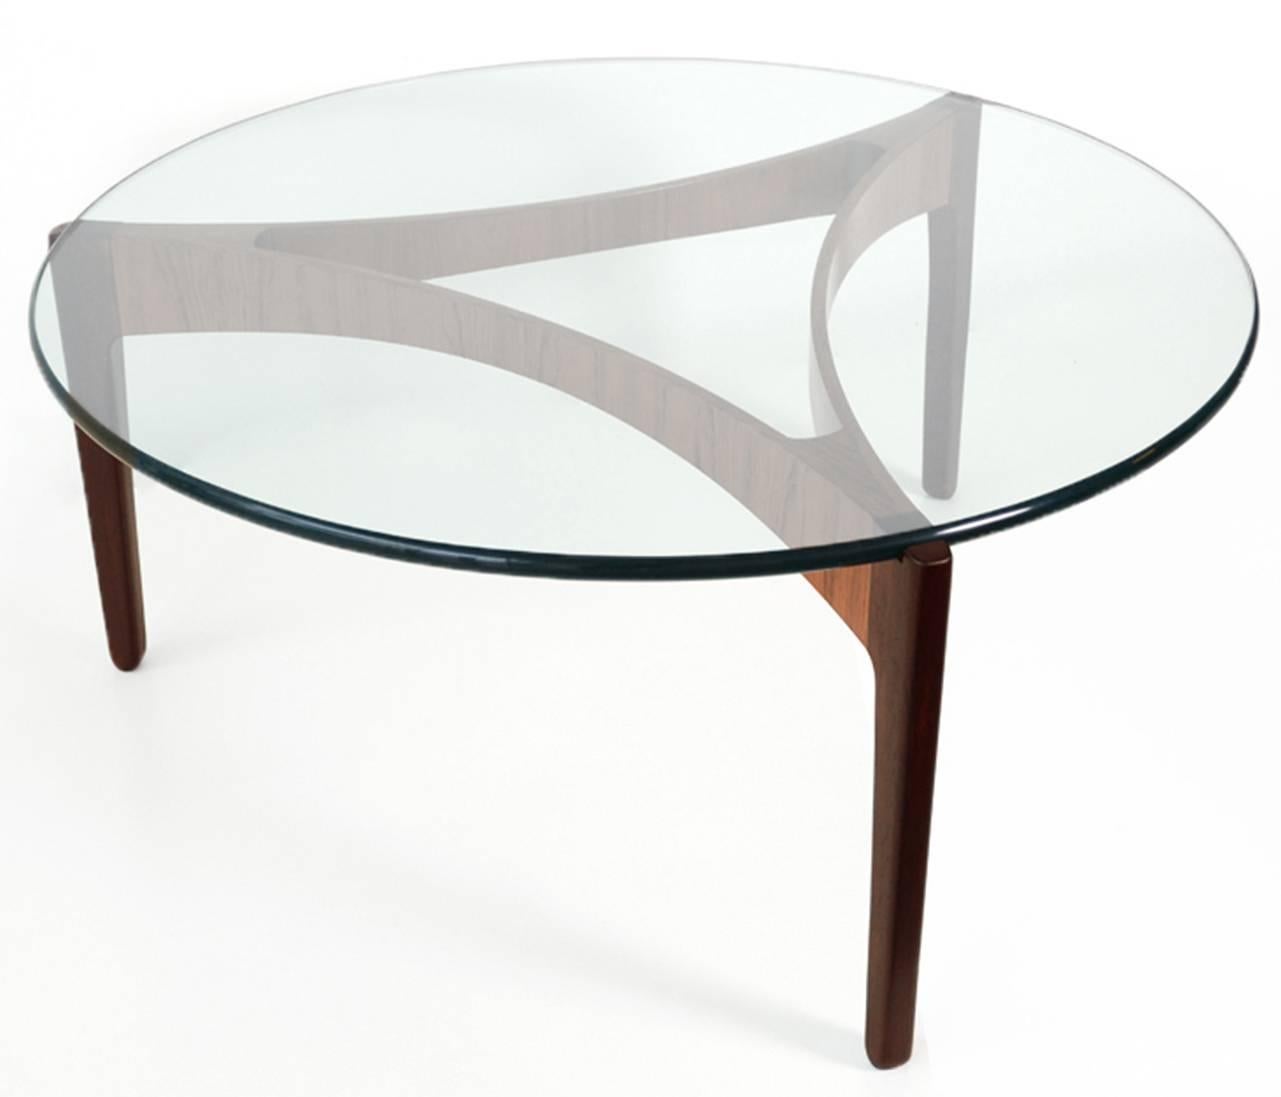 Mid-Century Modern Elegant Rosewood Coffee Table by Sven Ellekaer for C. Linneberg, Denmark, 1960